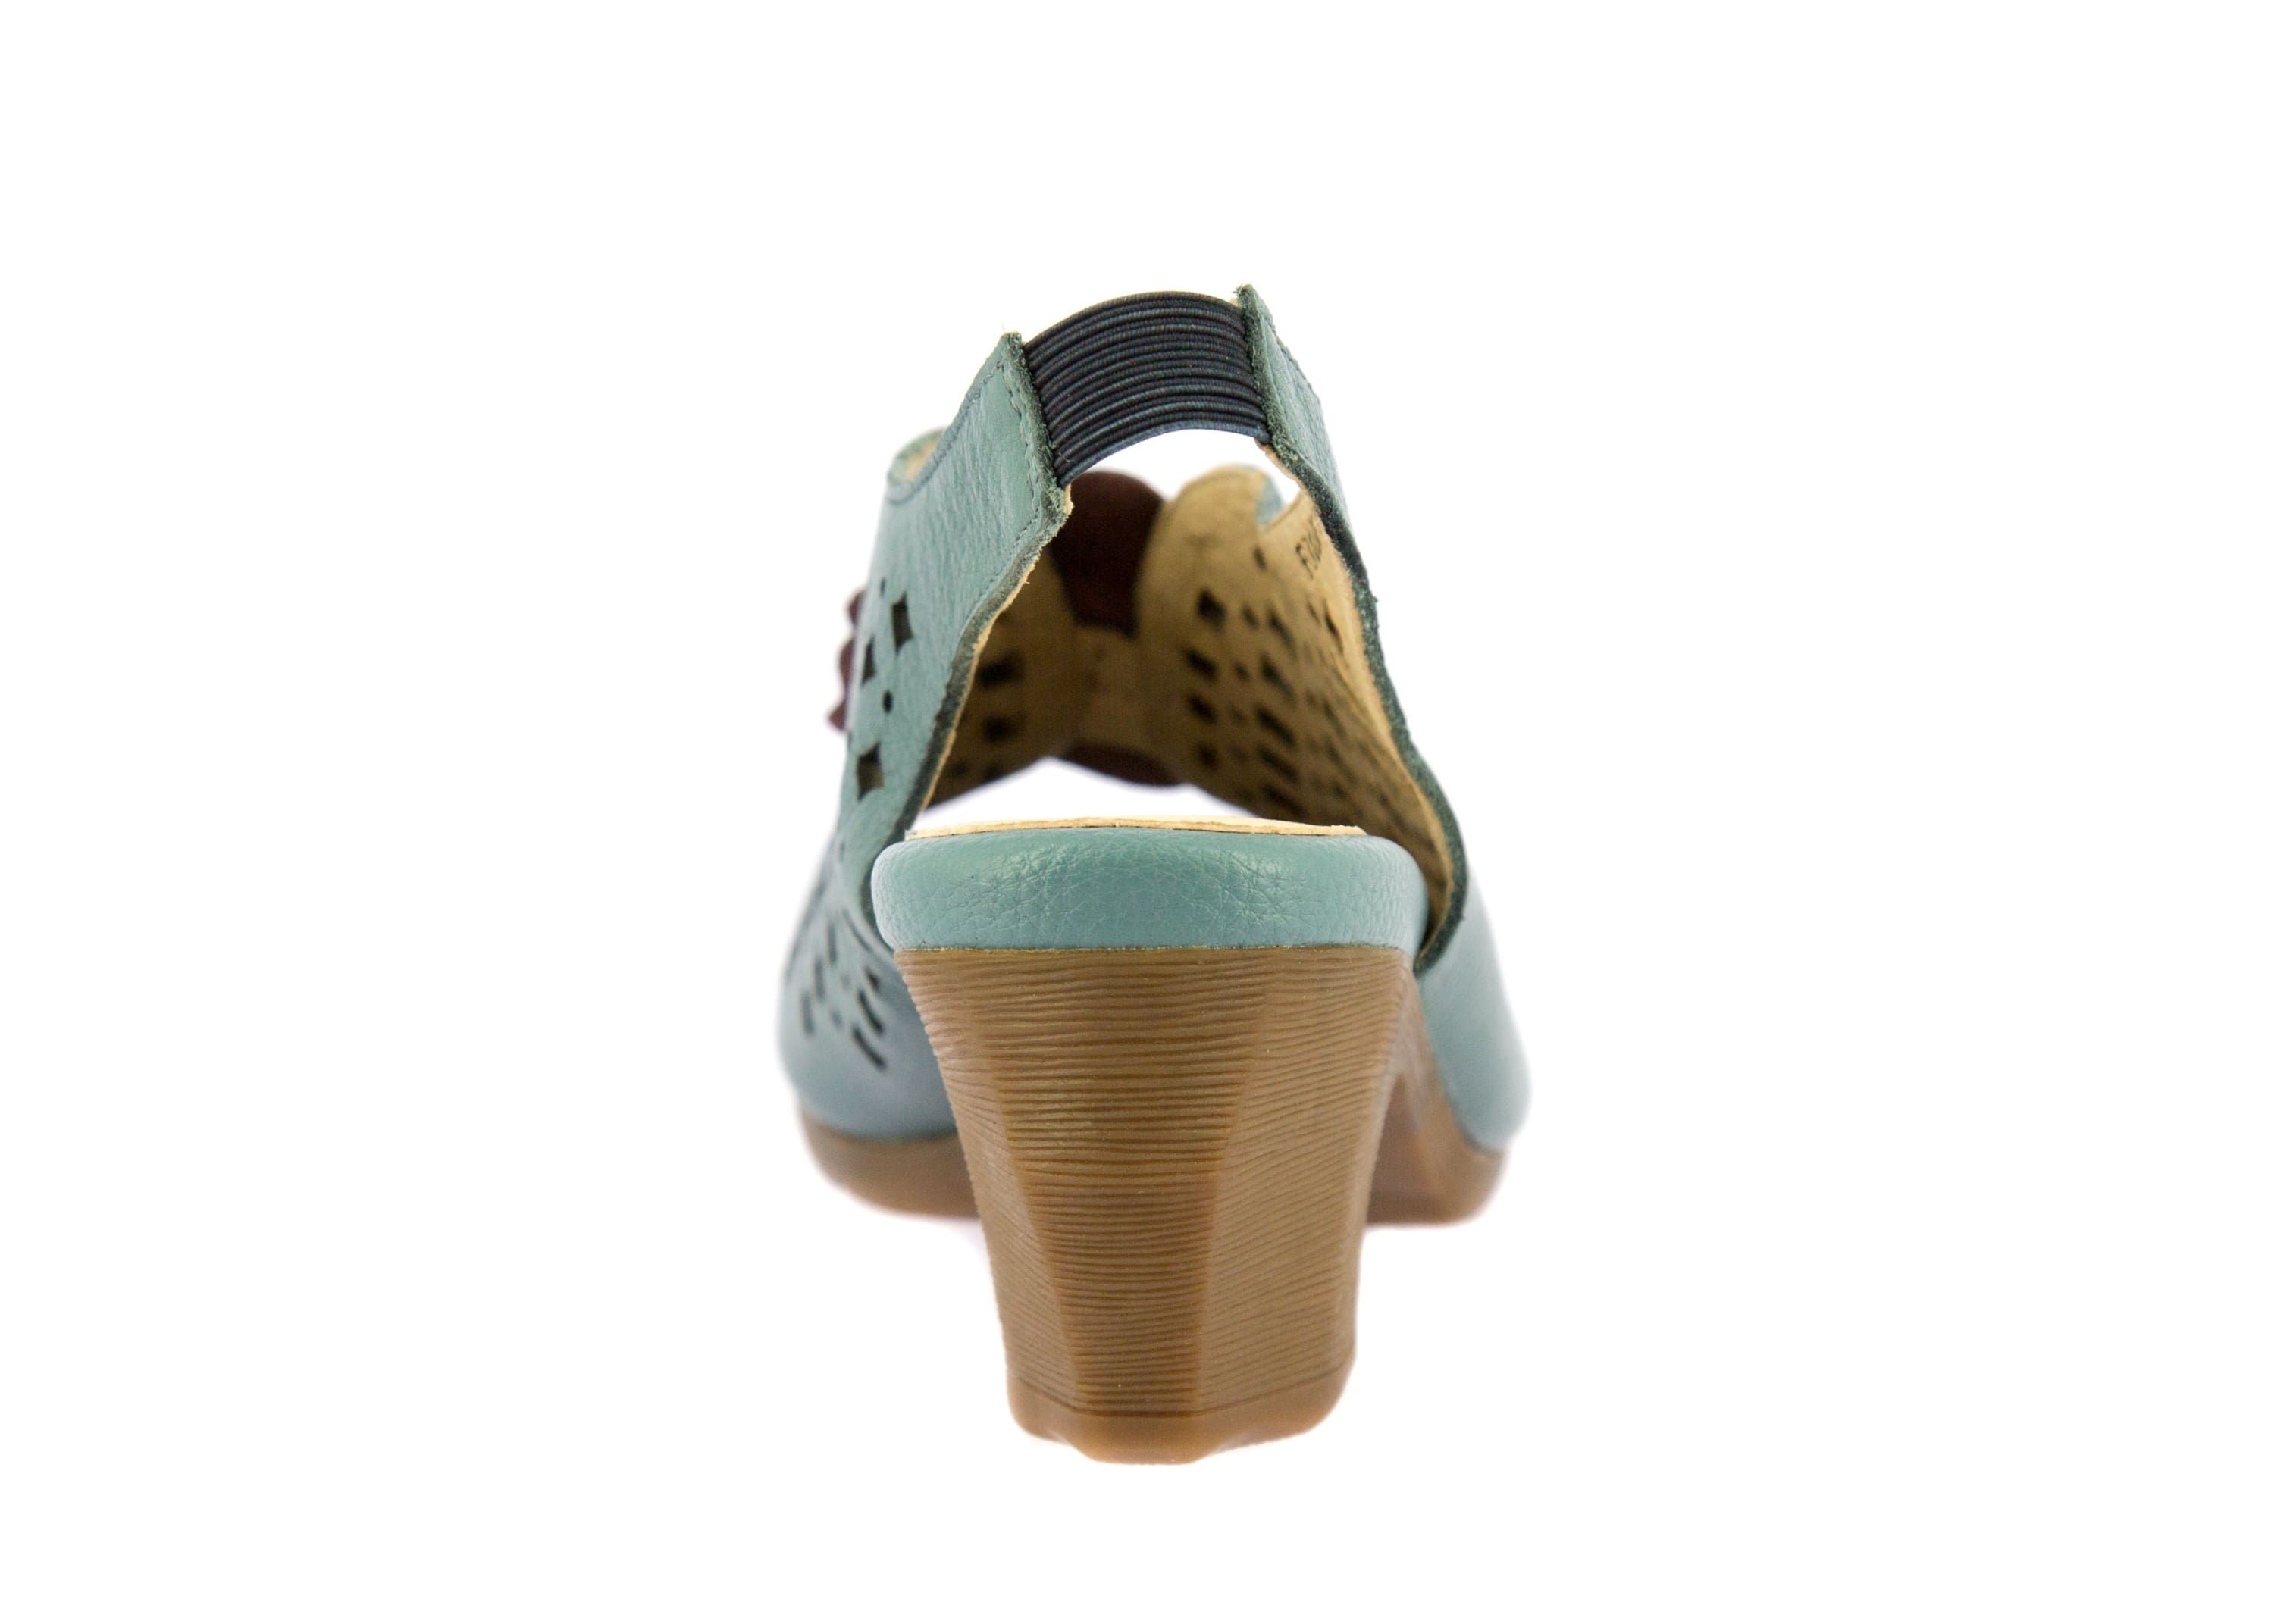 Shoe FICGUEO305 - Sandal